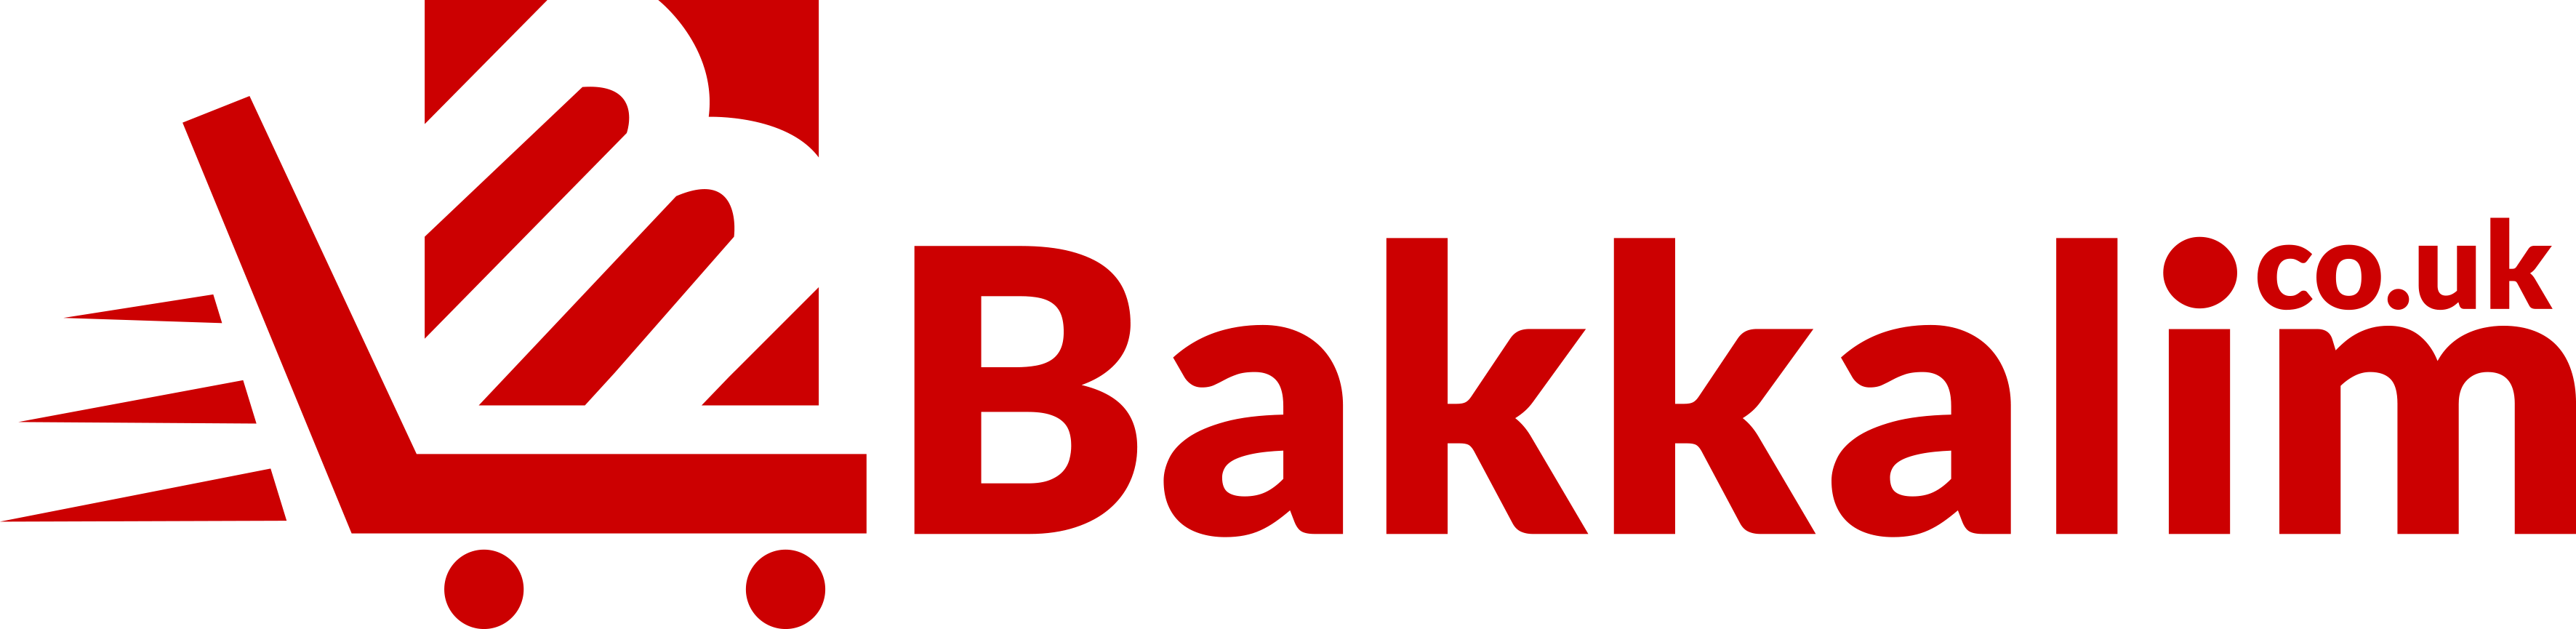 bakkalim-logo